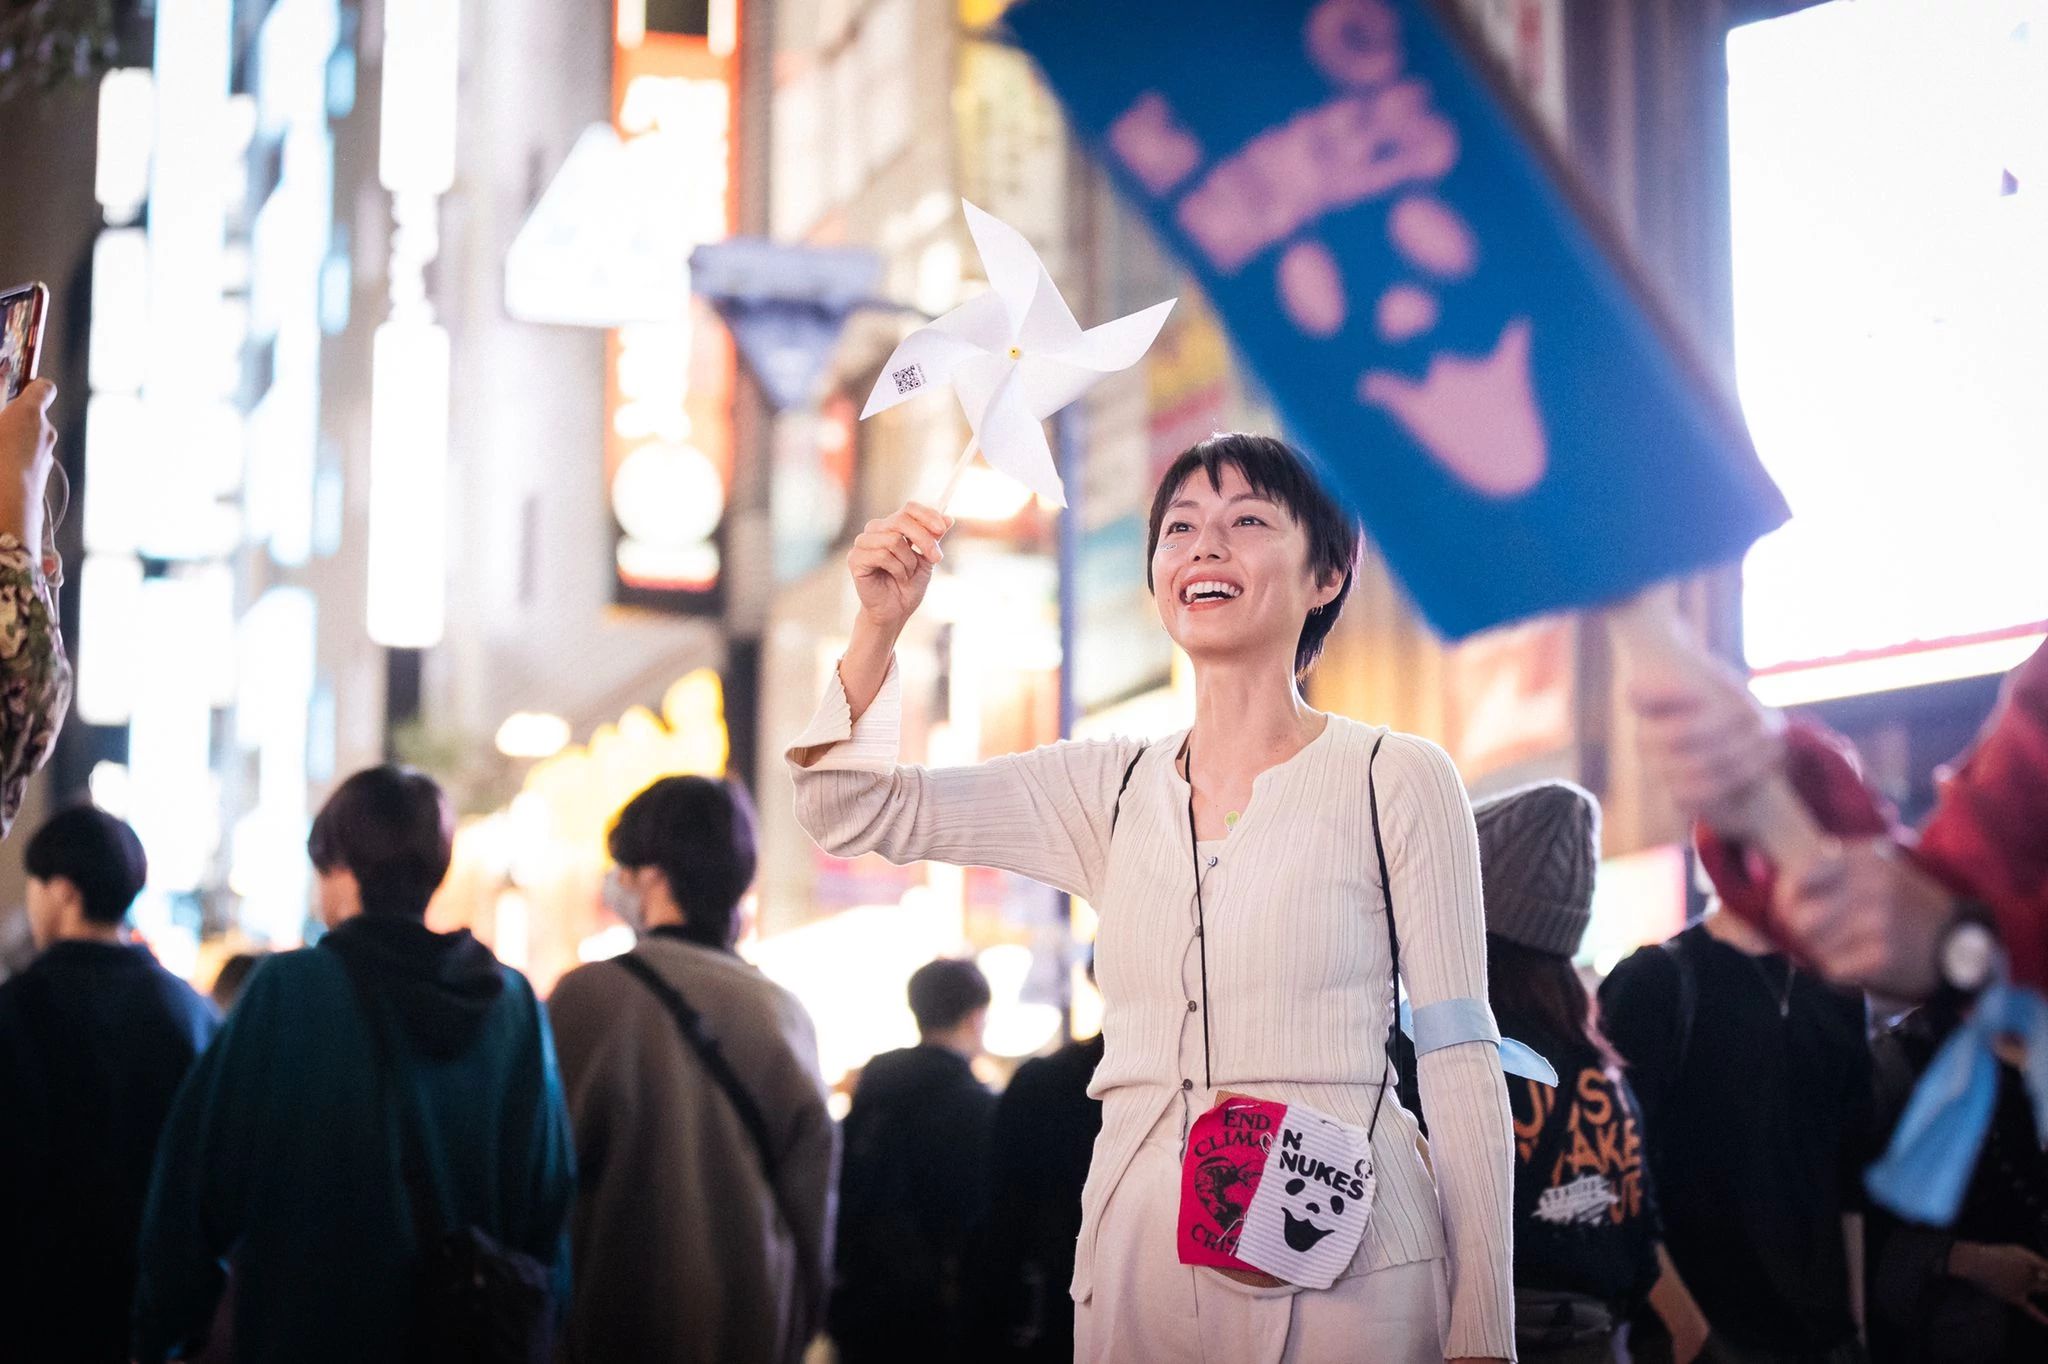 Tokyo, Japan, 3.11.: mehr als 800 Menschen singen gemeinsam beim Shinjuku-Bahnhof ein leidenschaftliches Klimaschutzlied, zu hören in der gesamten Innenstadt, organisiert von 350 Japan mit We Want Our Future. Bildnachweis: Jun Yokoyama